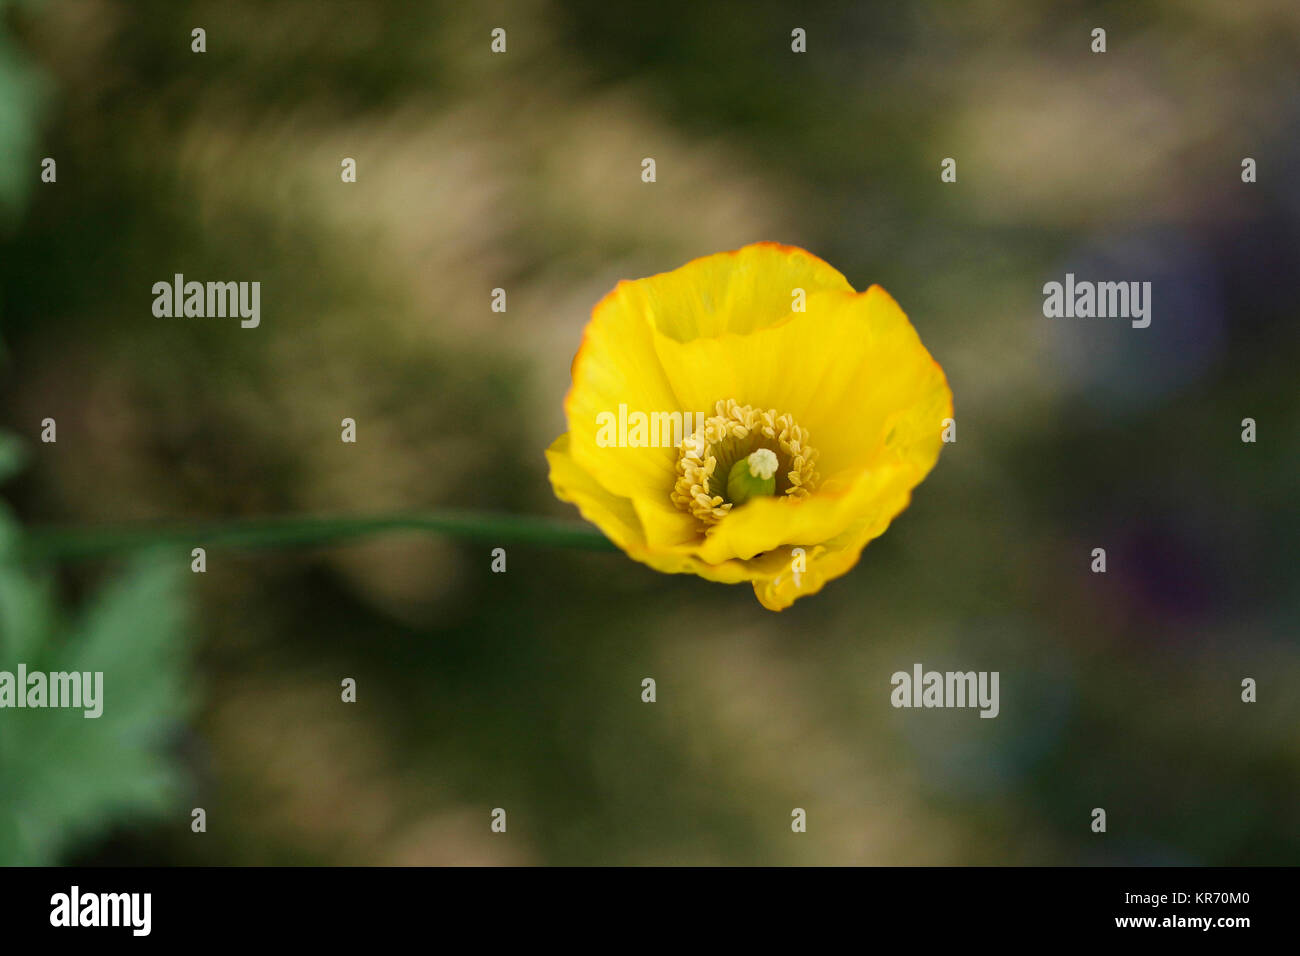 Semi di papavero, Papavero californiano, Eschsclolzia californica, aprire fiore giallo testa mostra stigma di filamenti e stame. Foto Stock